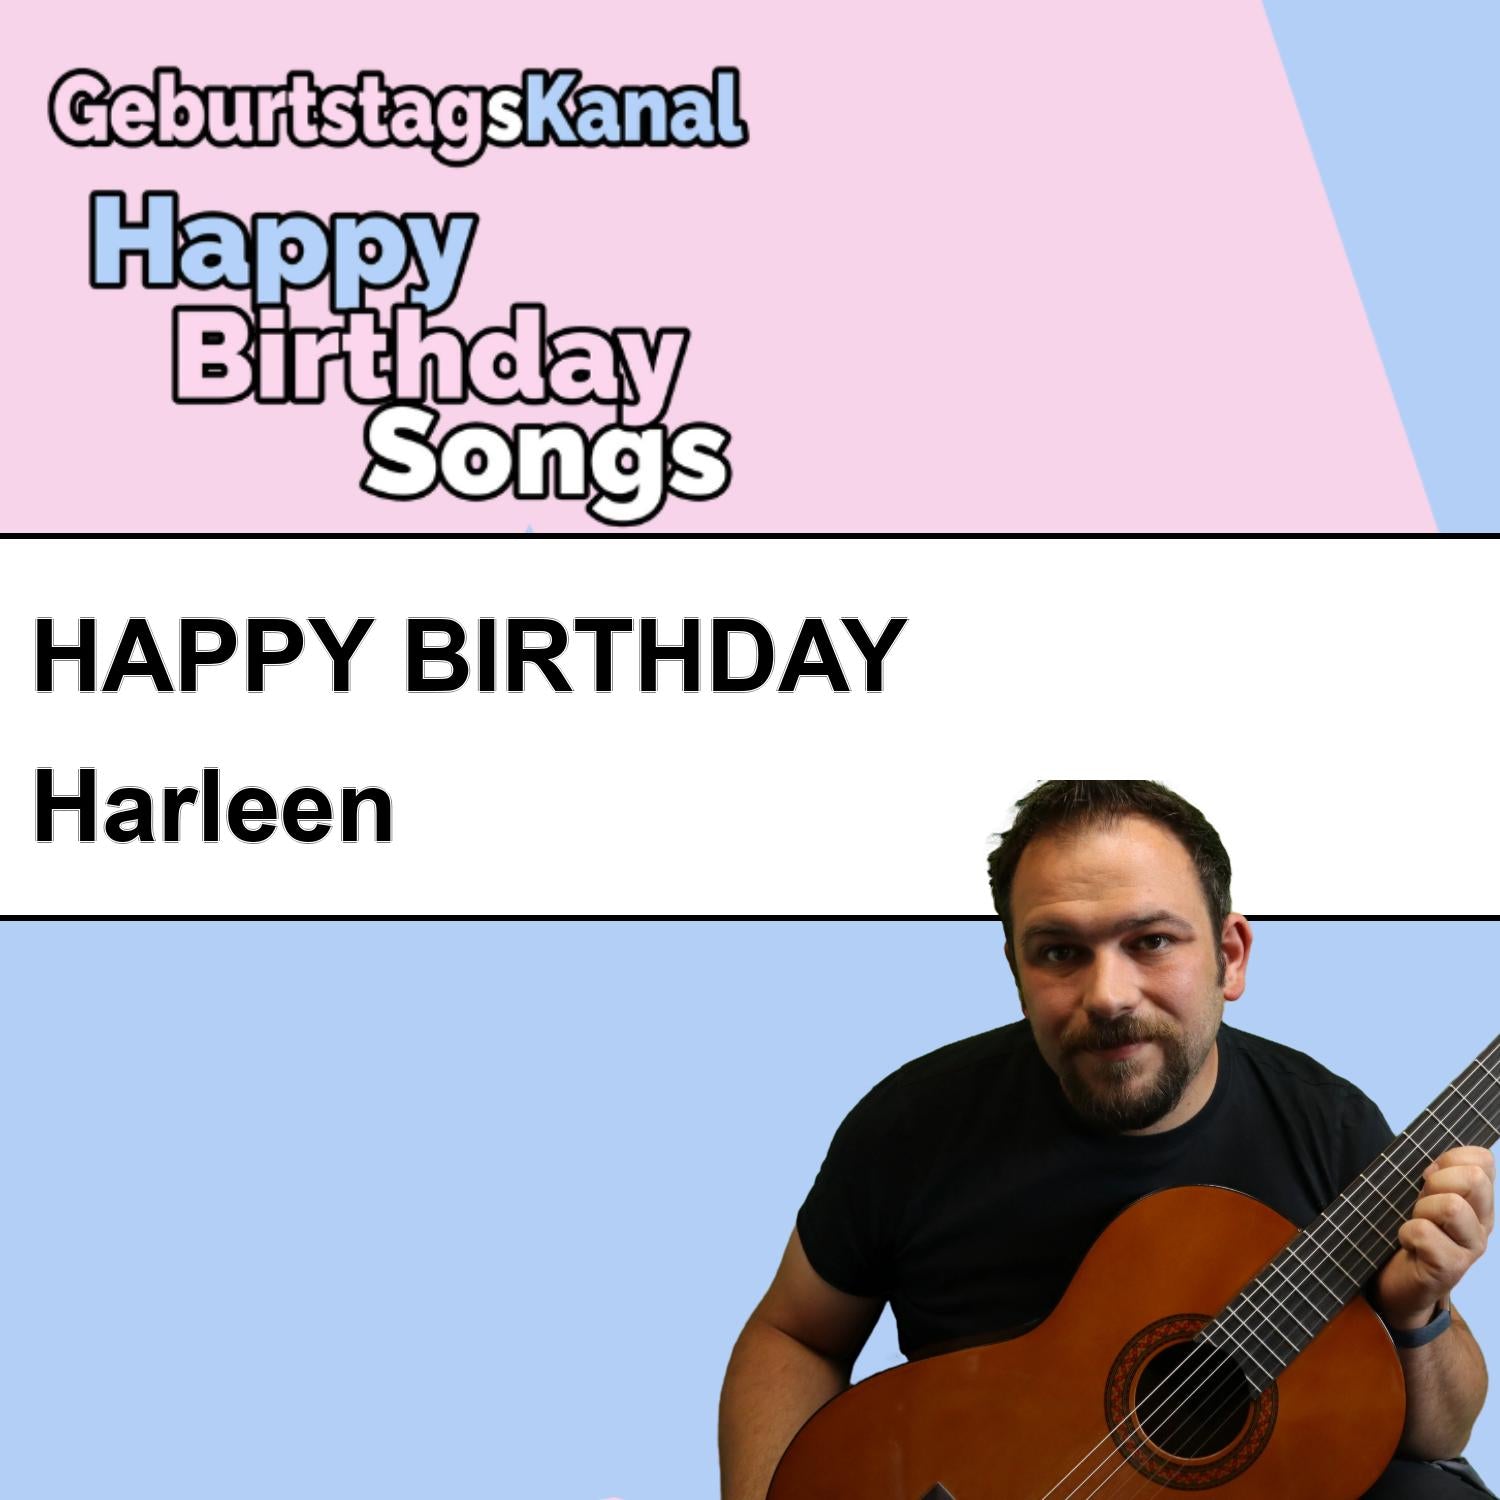 Produktbild Happy Birthday to you Harleen mit Wunschgrußbotschaft